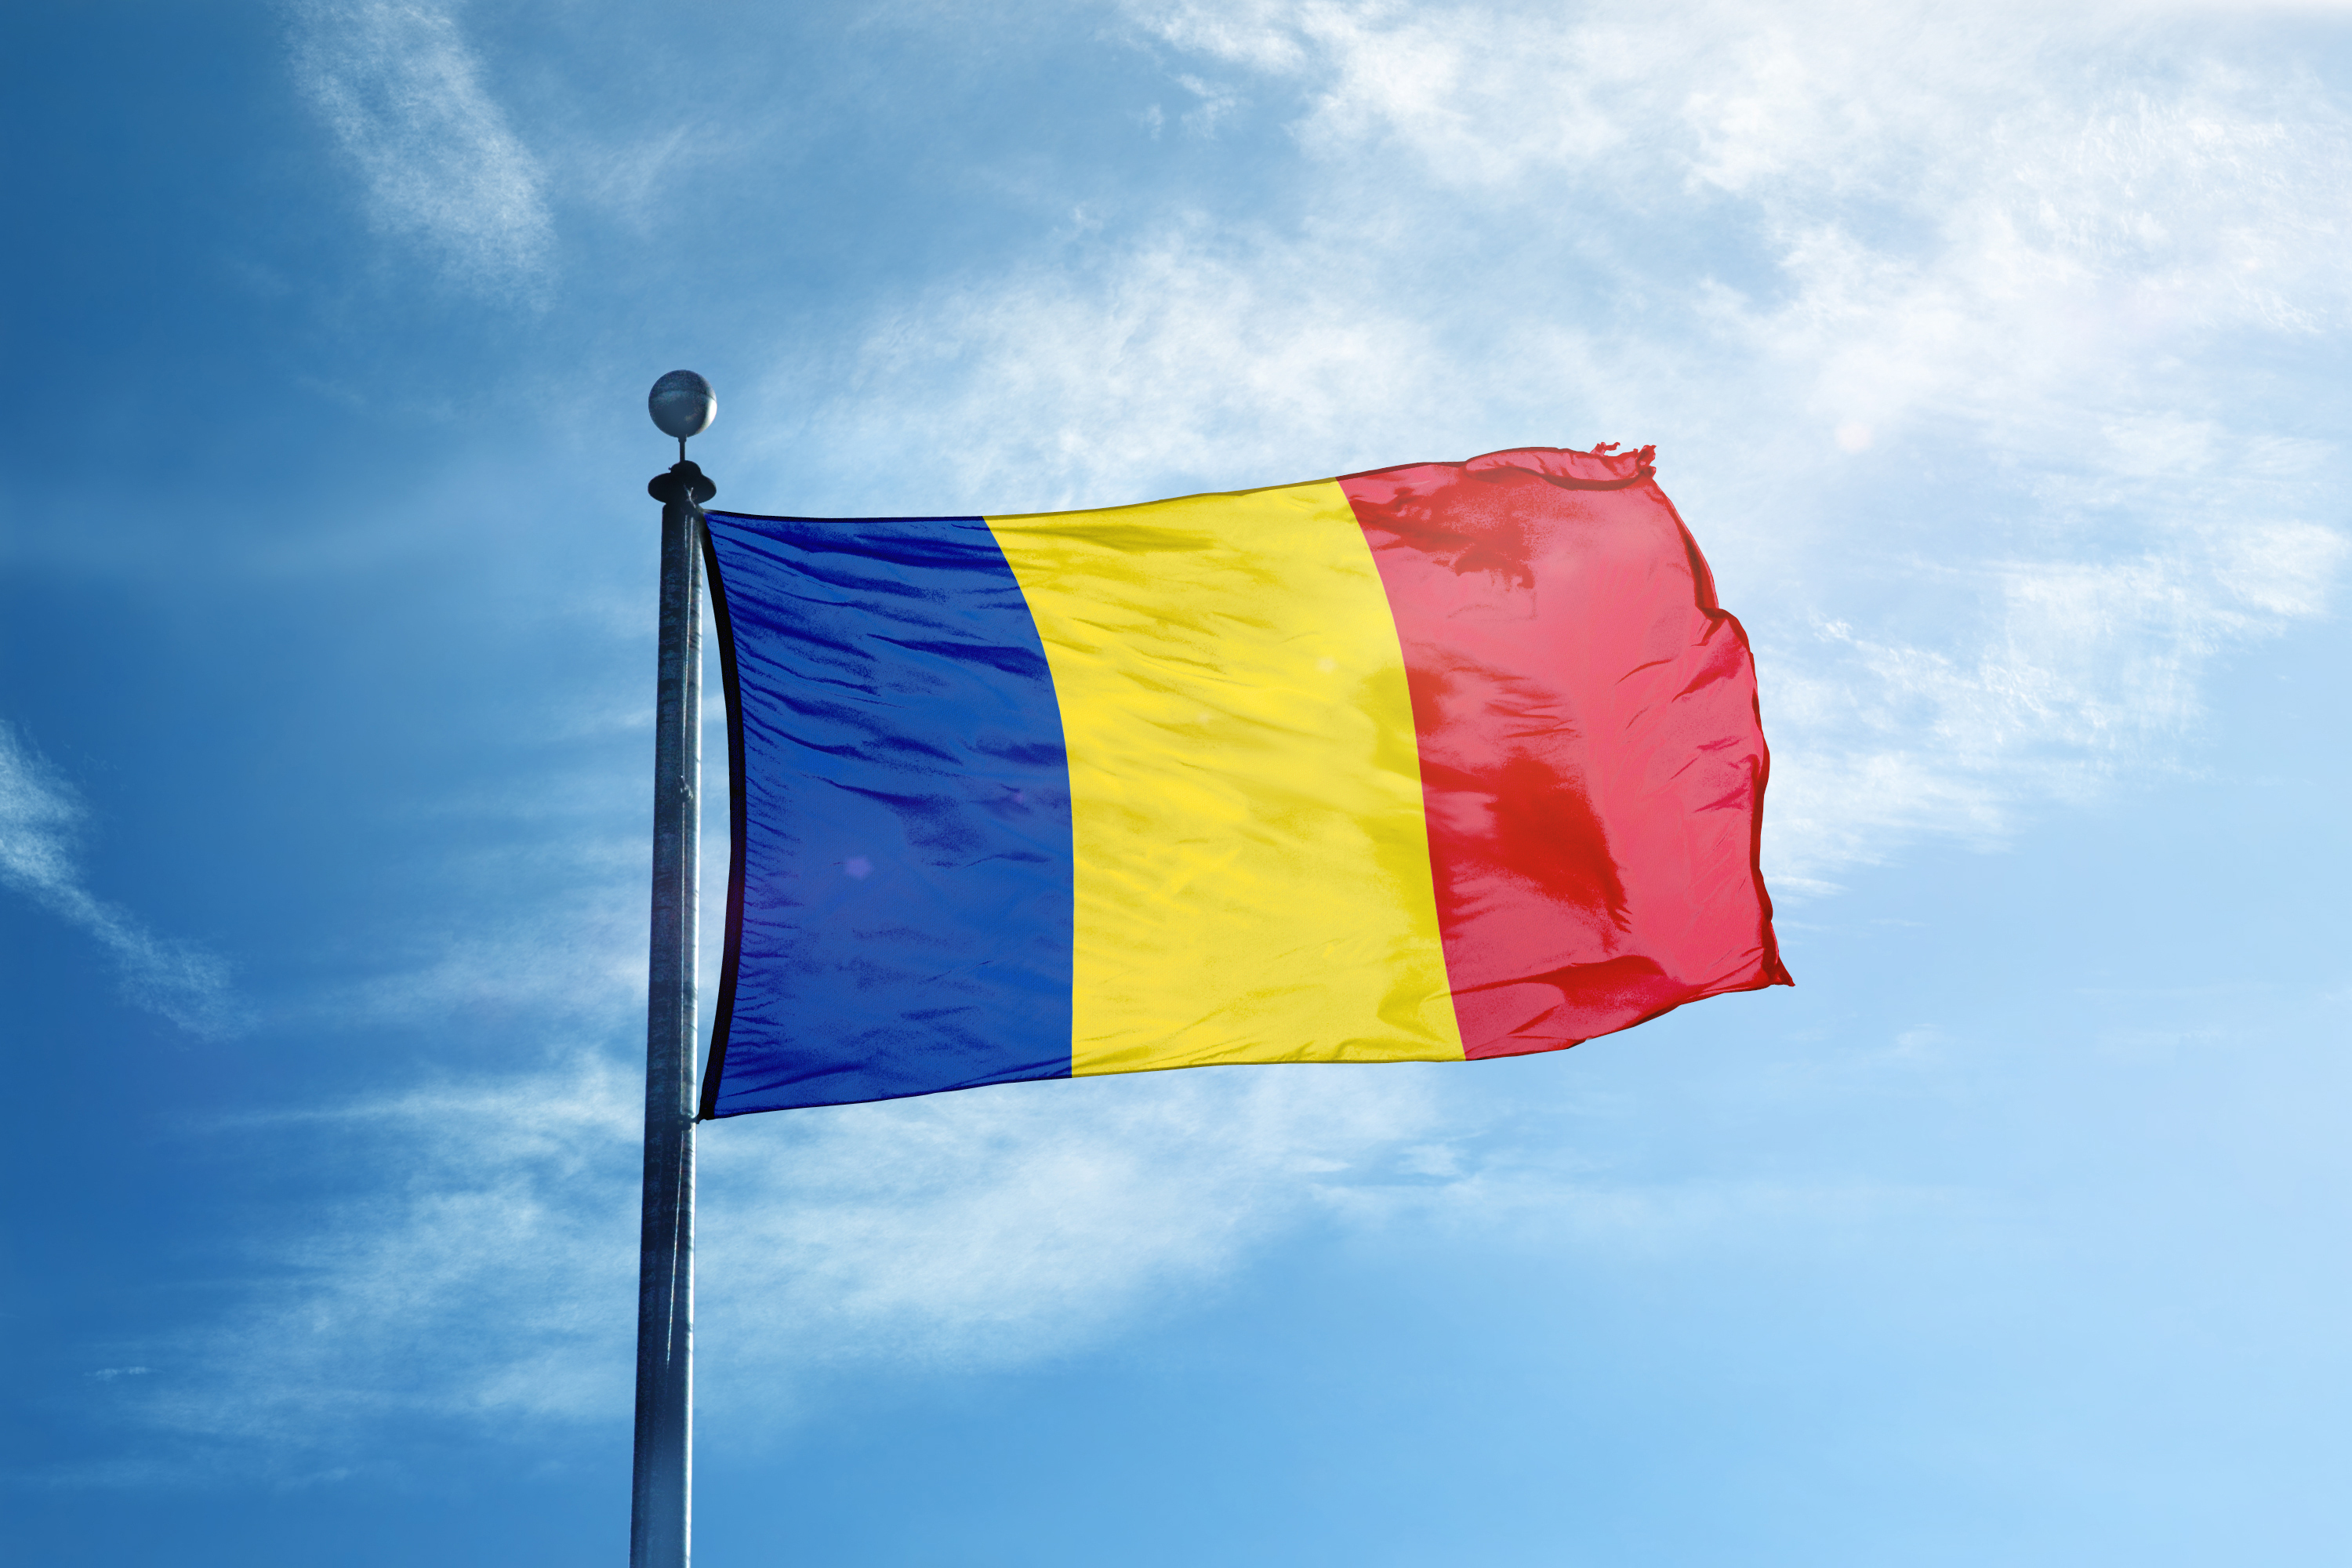 Флаг Румынии, страны, где присягу надо принимать для получения паспорта